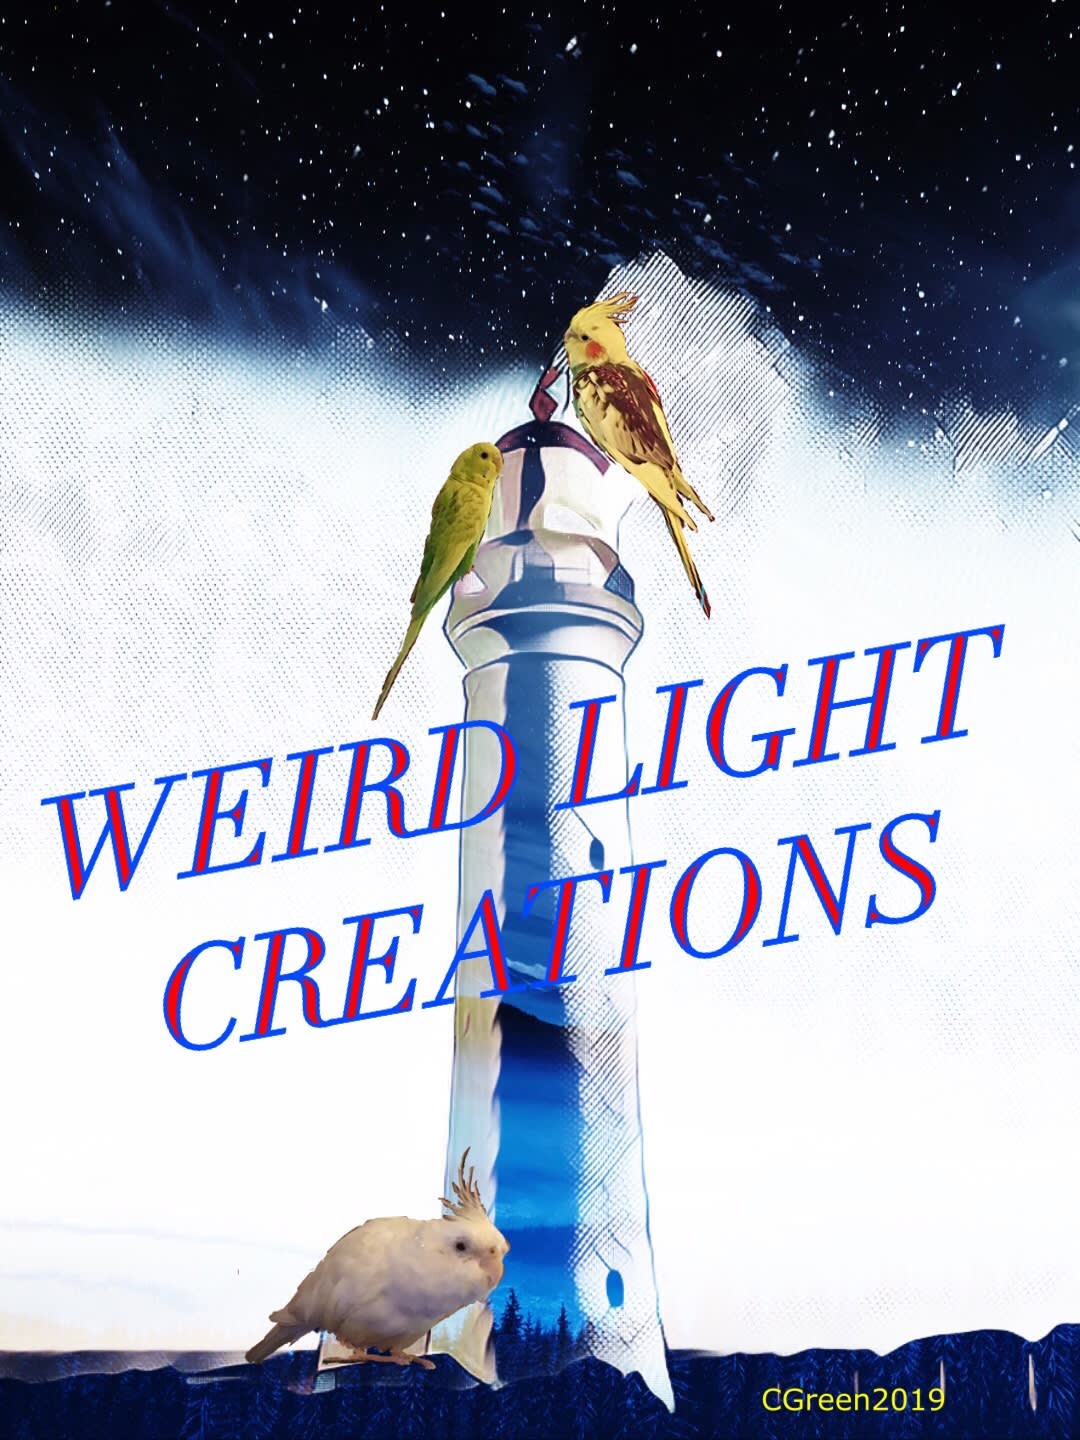 Weird Light Creations